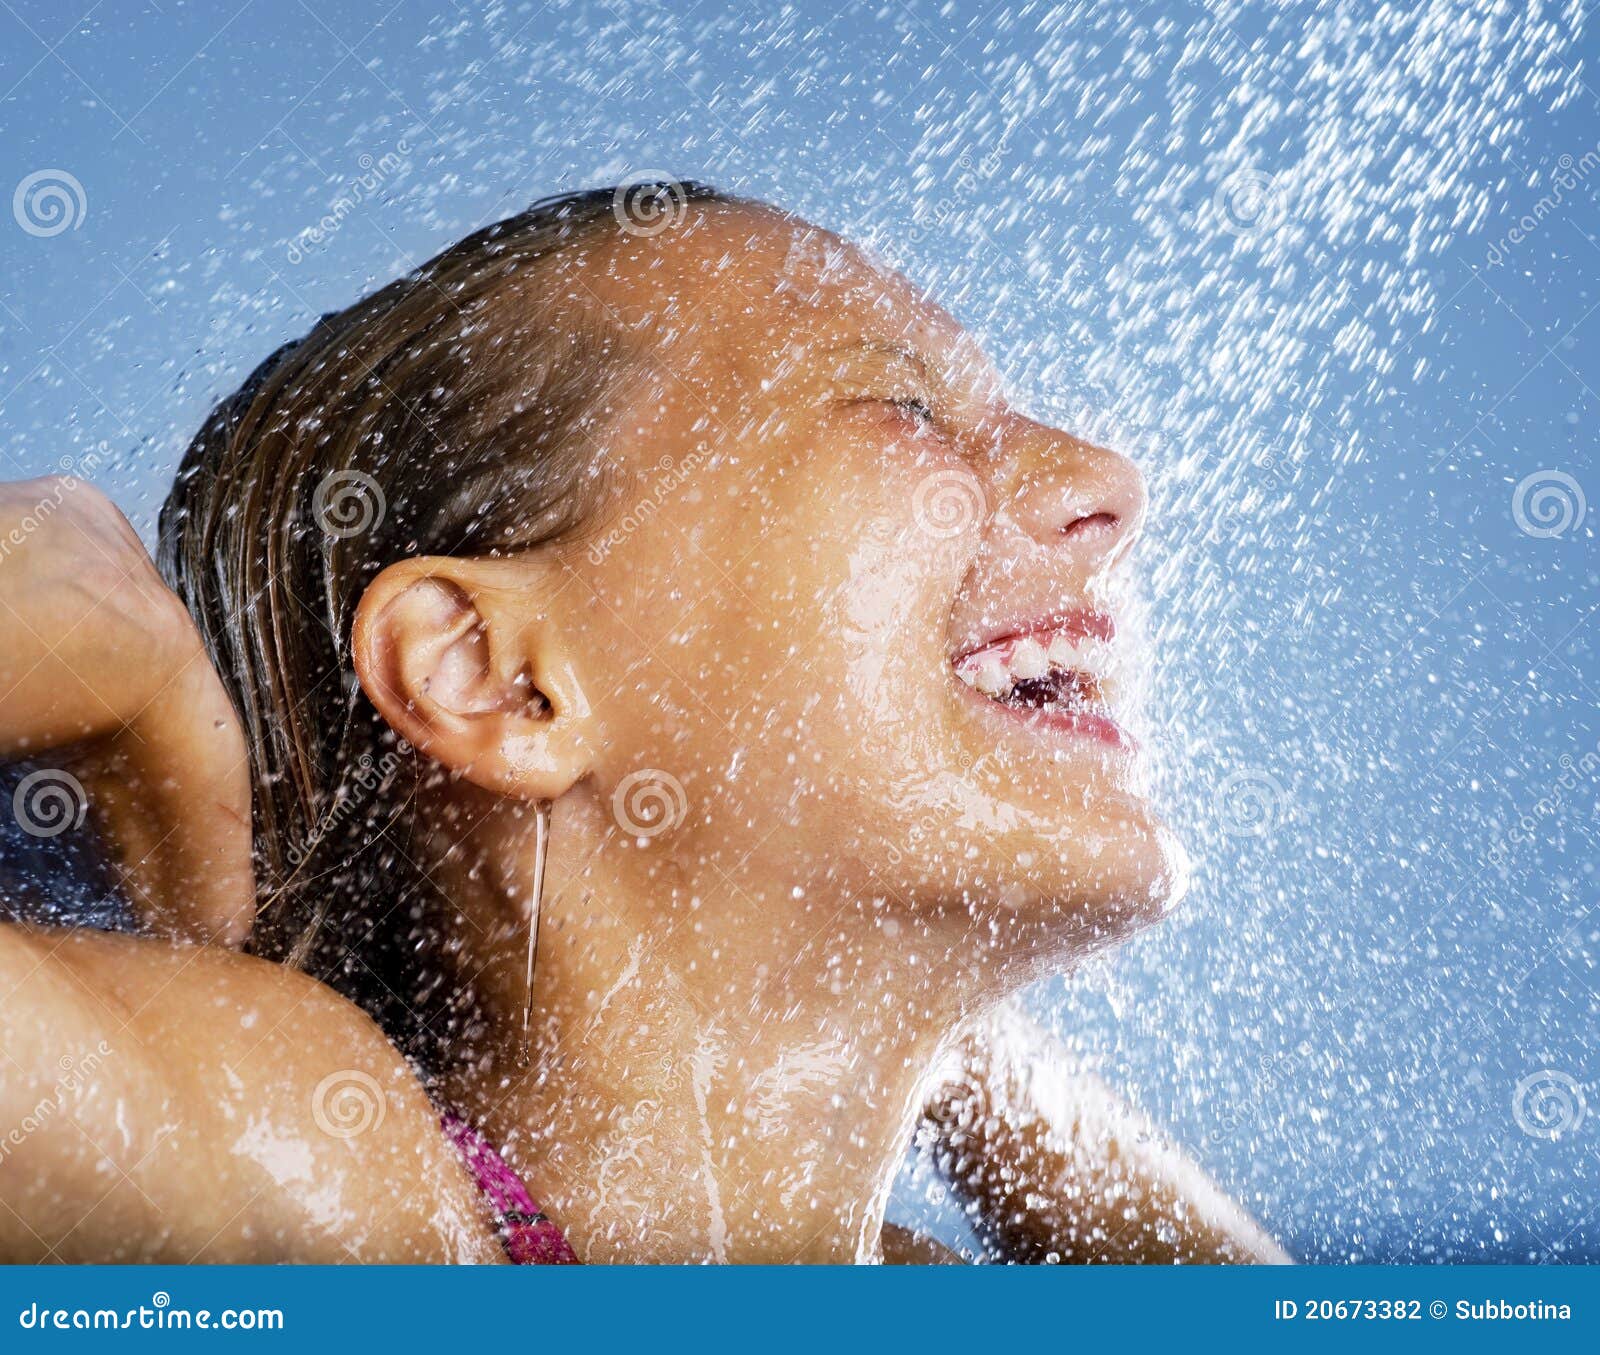 洗冷水澡对健康的好处积极的力量beplay手机注册beplay2官网登录 - beplay体育appios